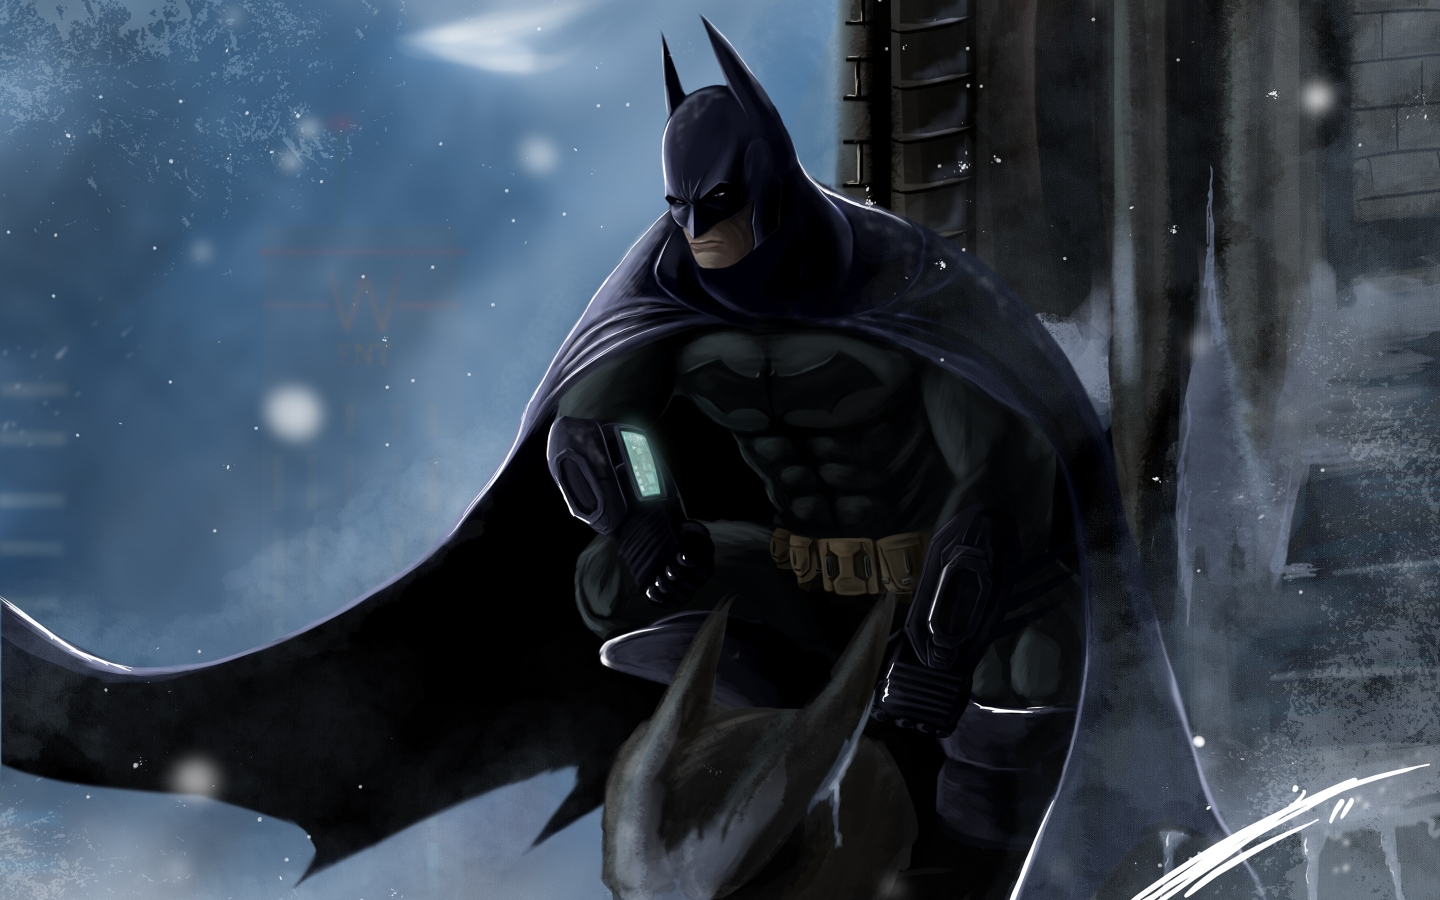 Batman Artwork for 1440 x 900 widescreen resolution